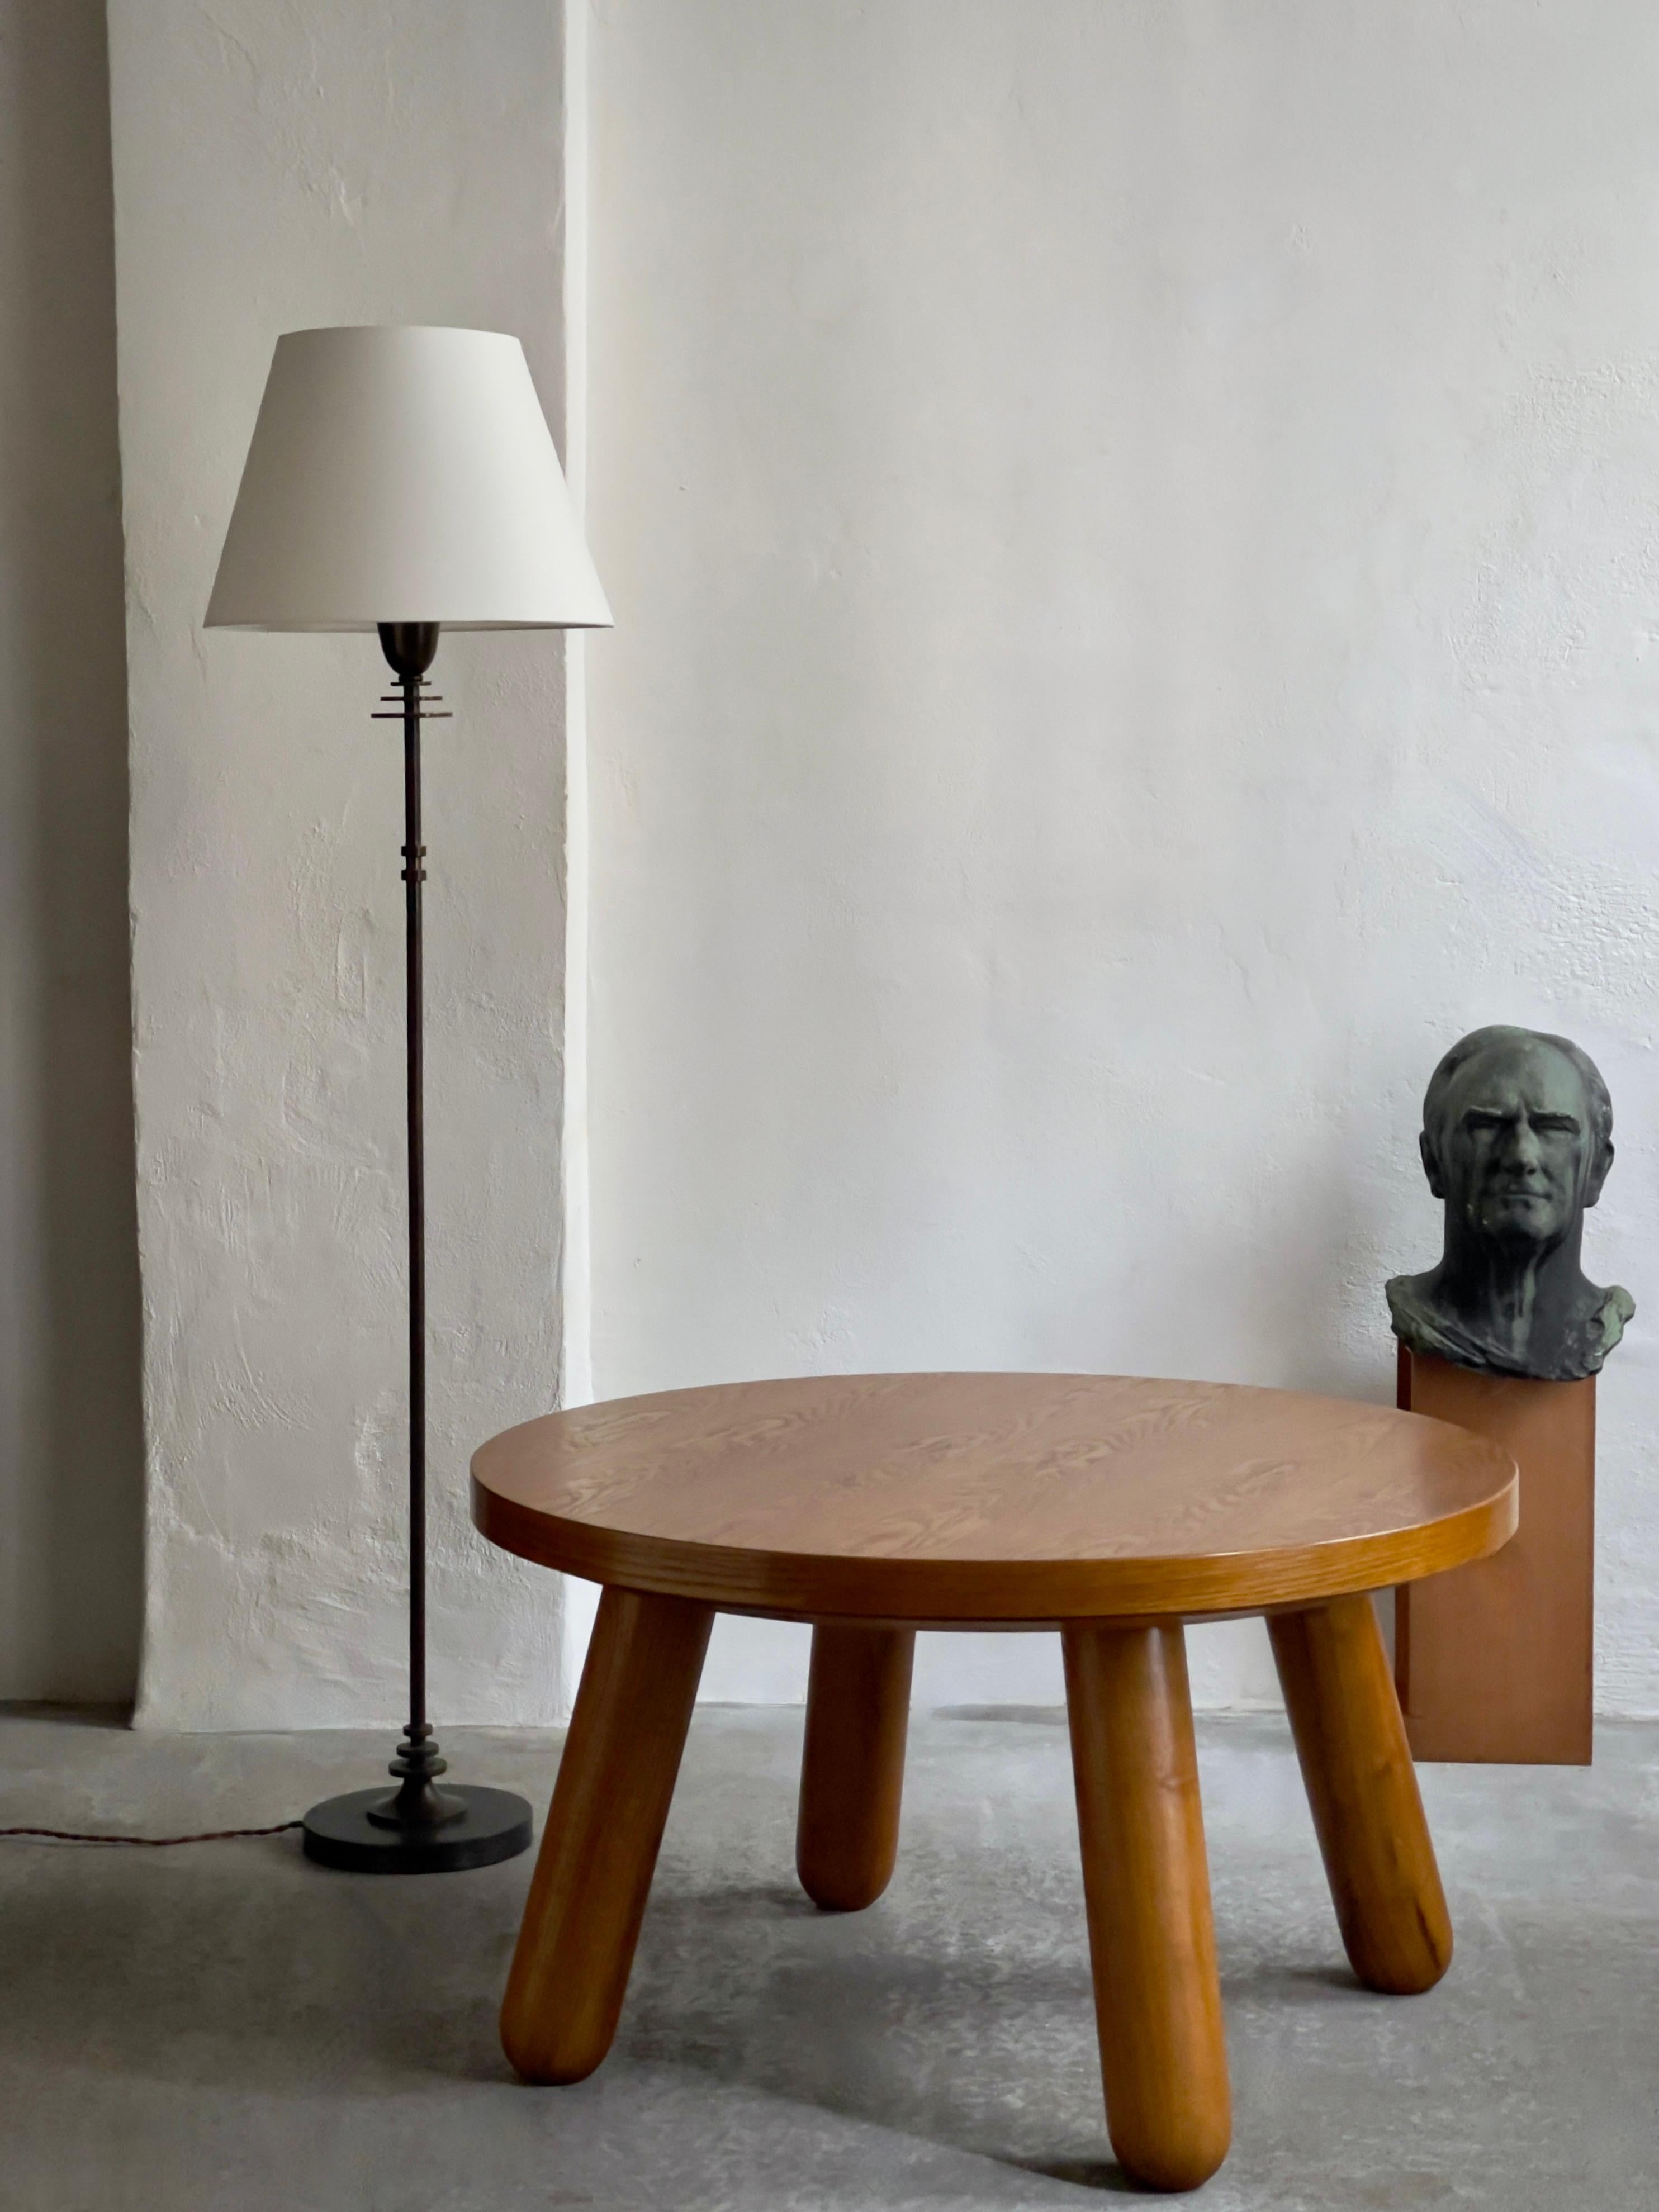 Cette table basse ronde exquise est issue du mouvement de design danois du milieu du siècle, mettant en valeur le savoir-faire exceptionnel pour lequel les fabricants de meubles danois sont renommés. Créée dans les années 1940 à Copenhague, au